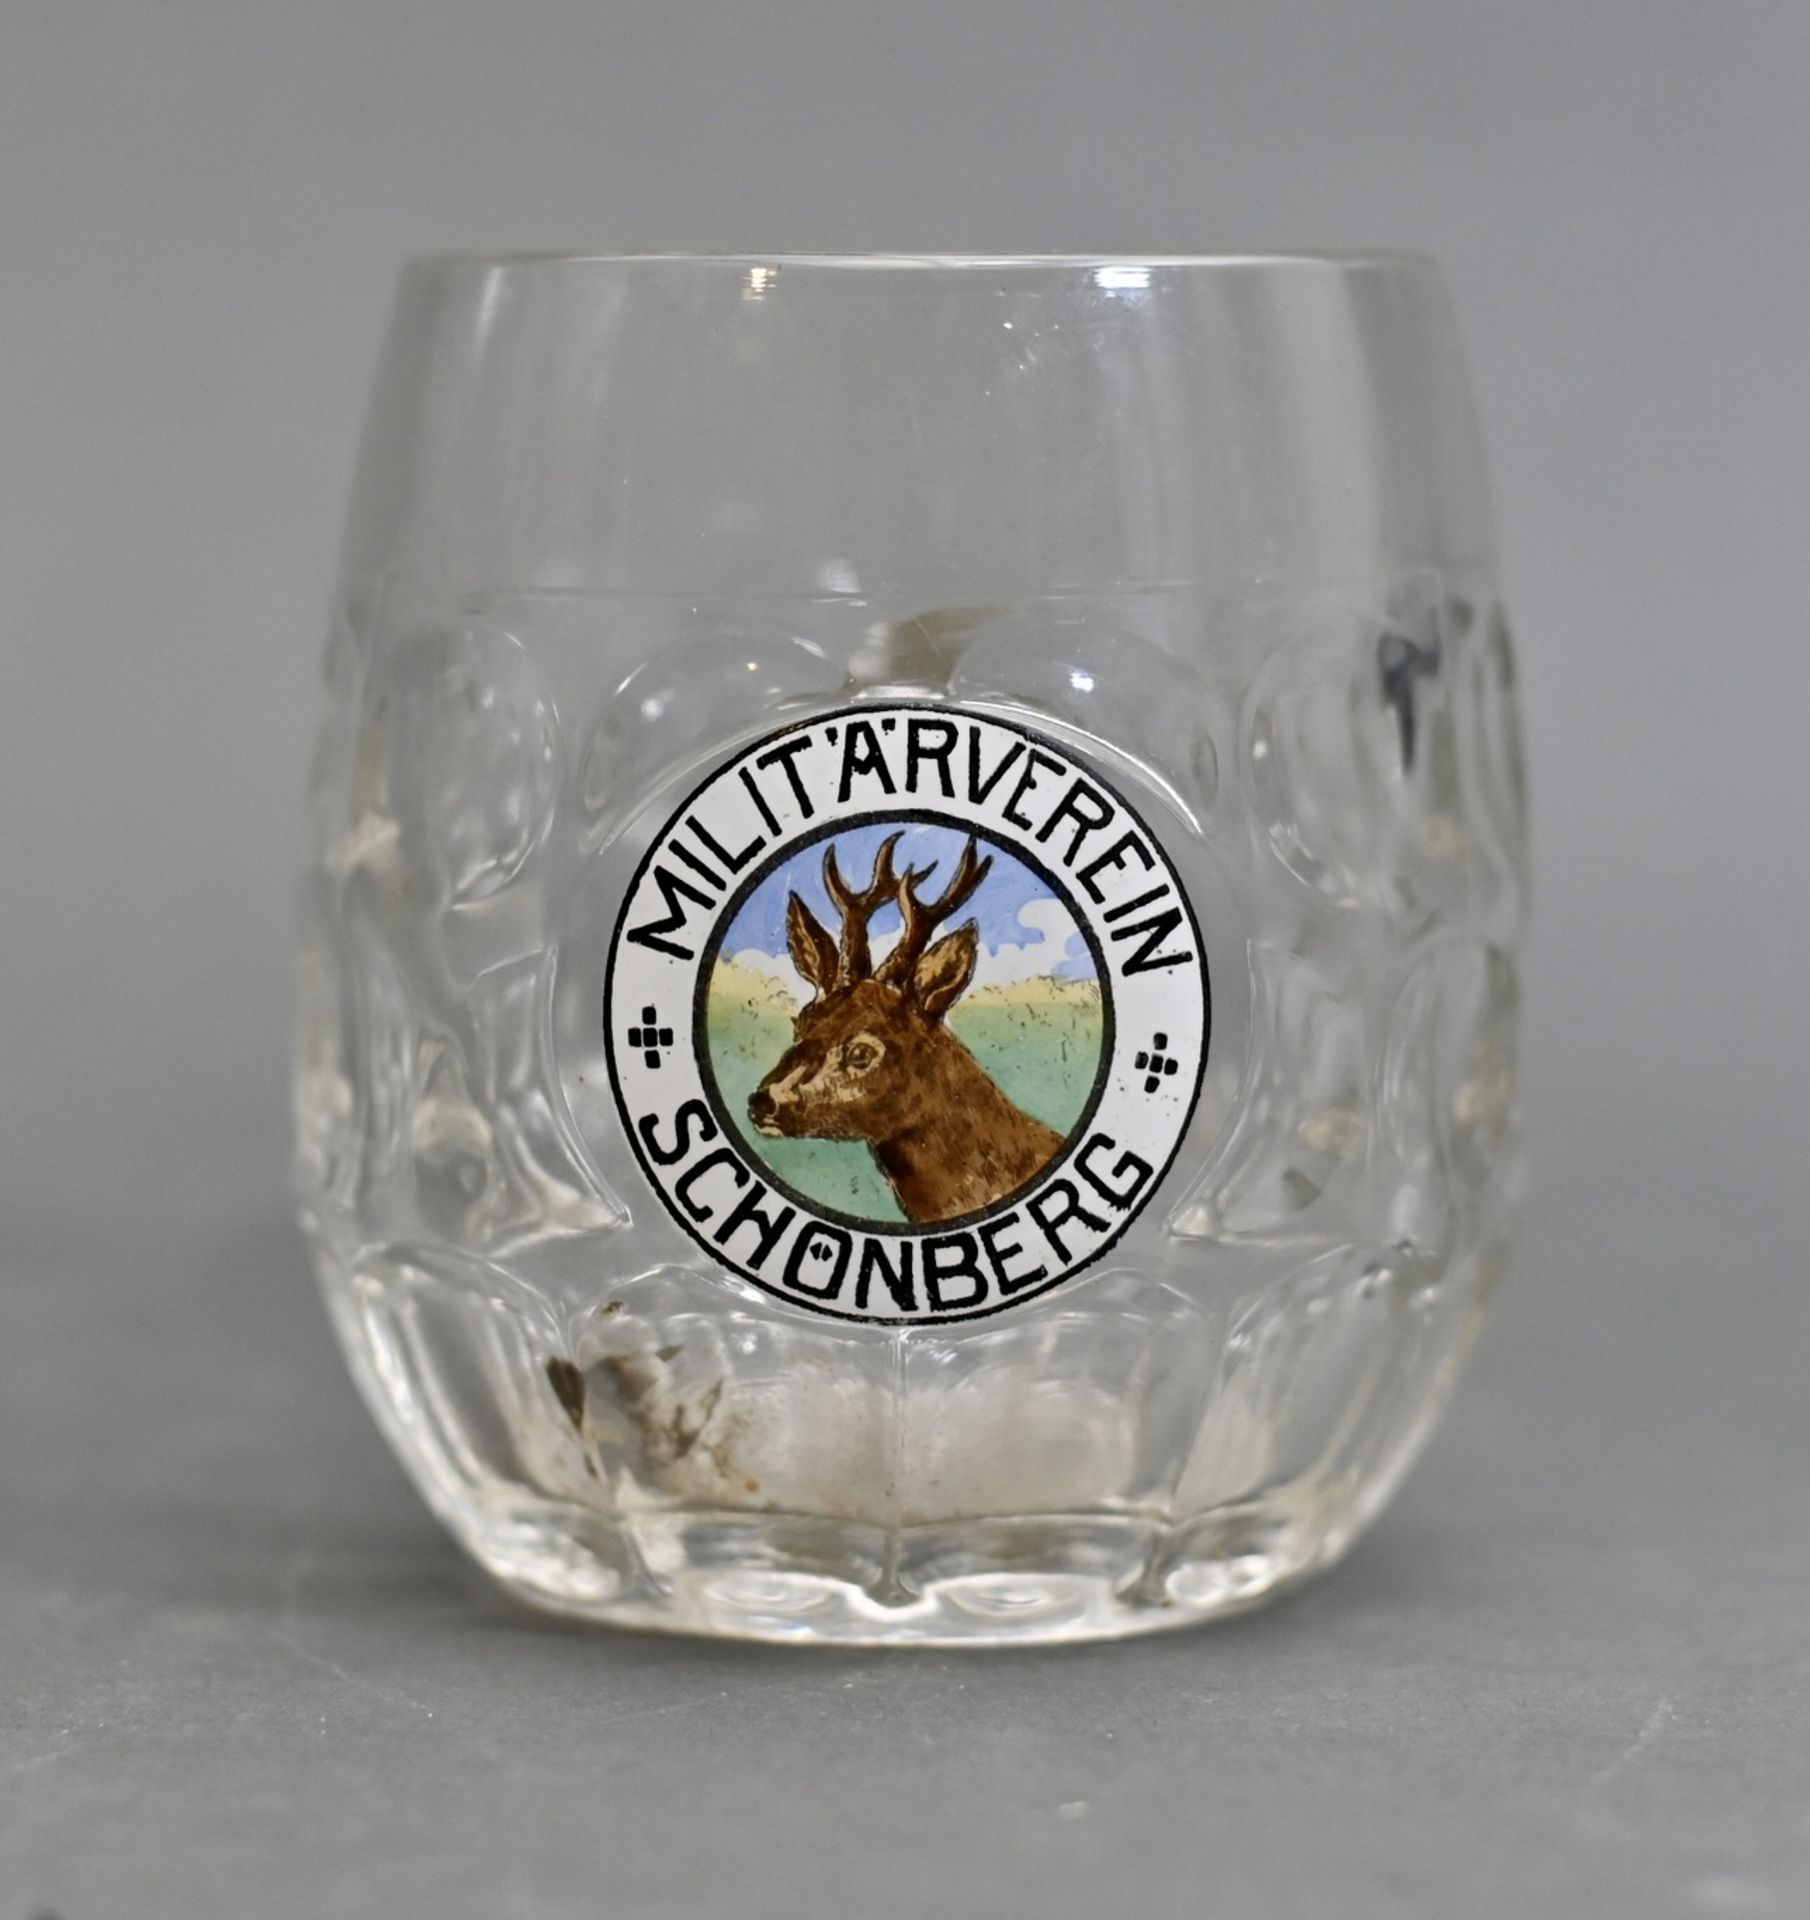 Militärverein-Mitgliedsglas, bauchiges Henkelglas mit Aufschrift "Militärverein Schönberg", von Hand